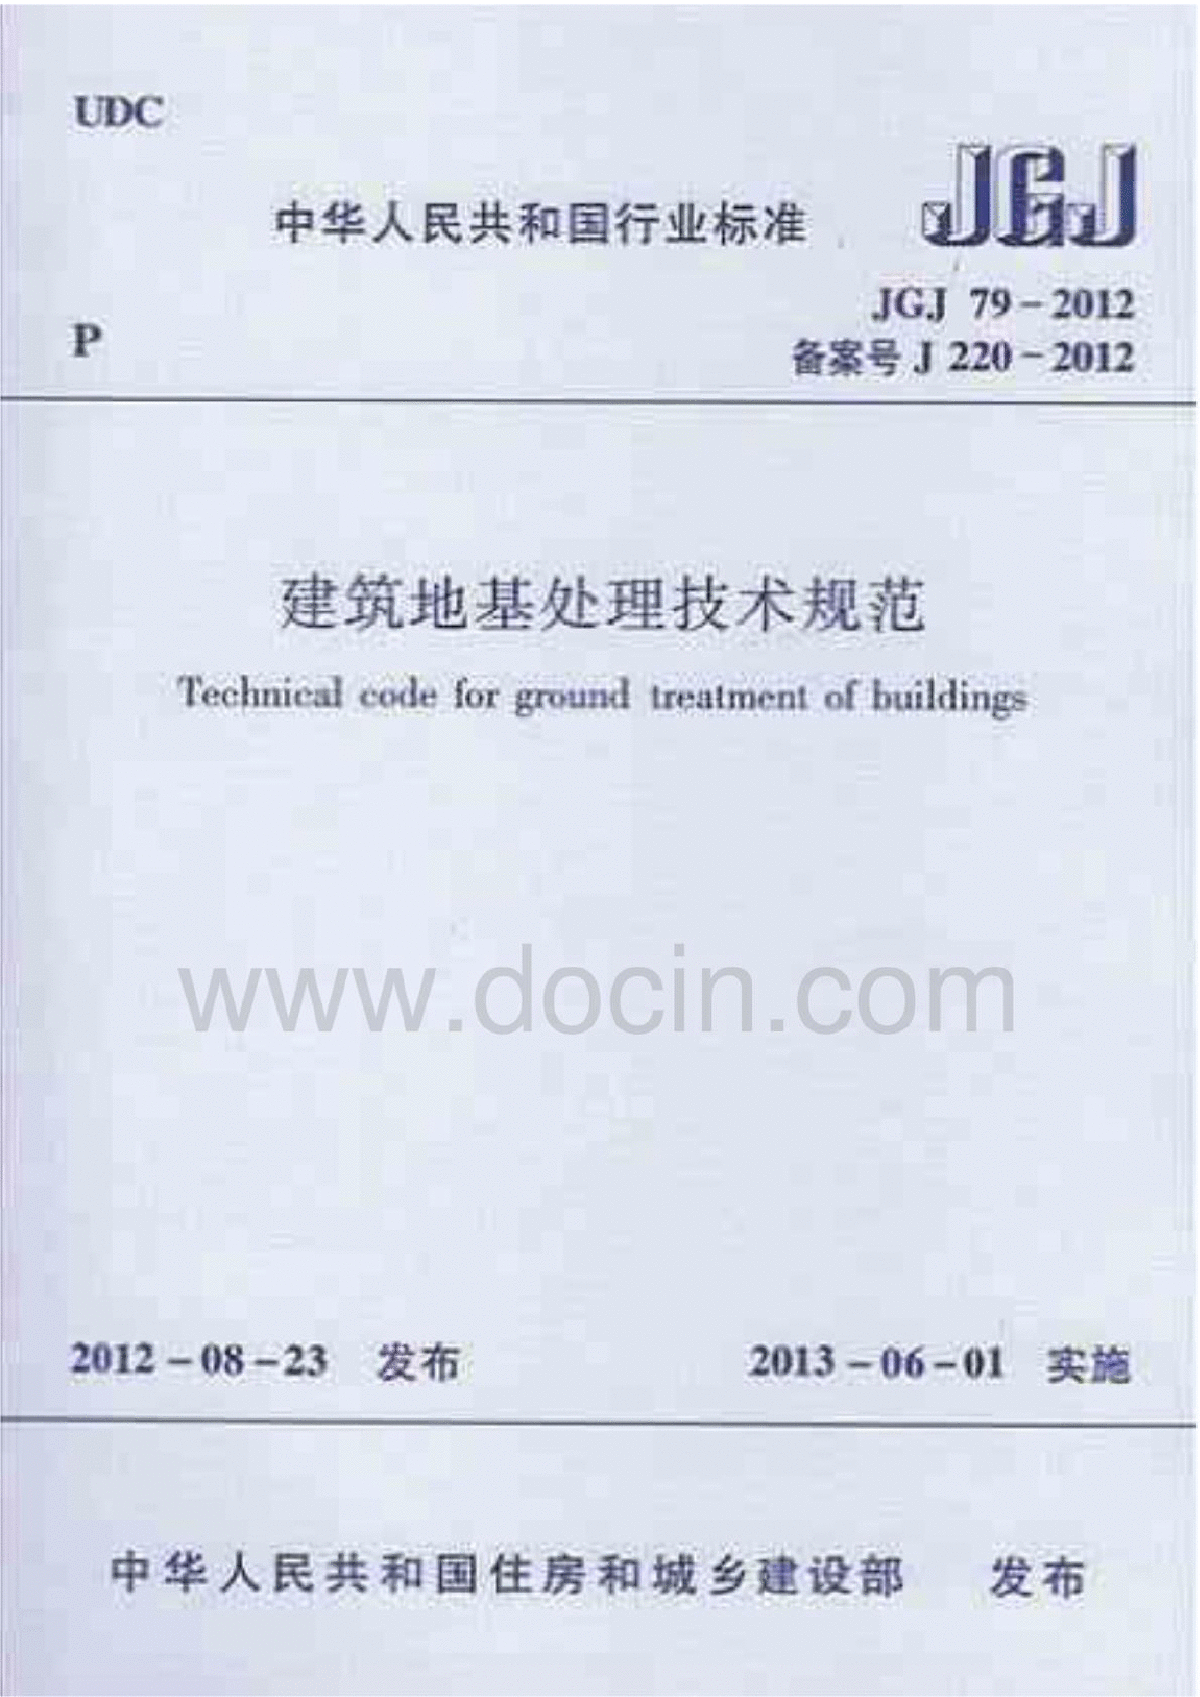 jgj79-2012建筑地基处理技术规范-图一